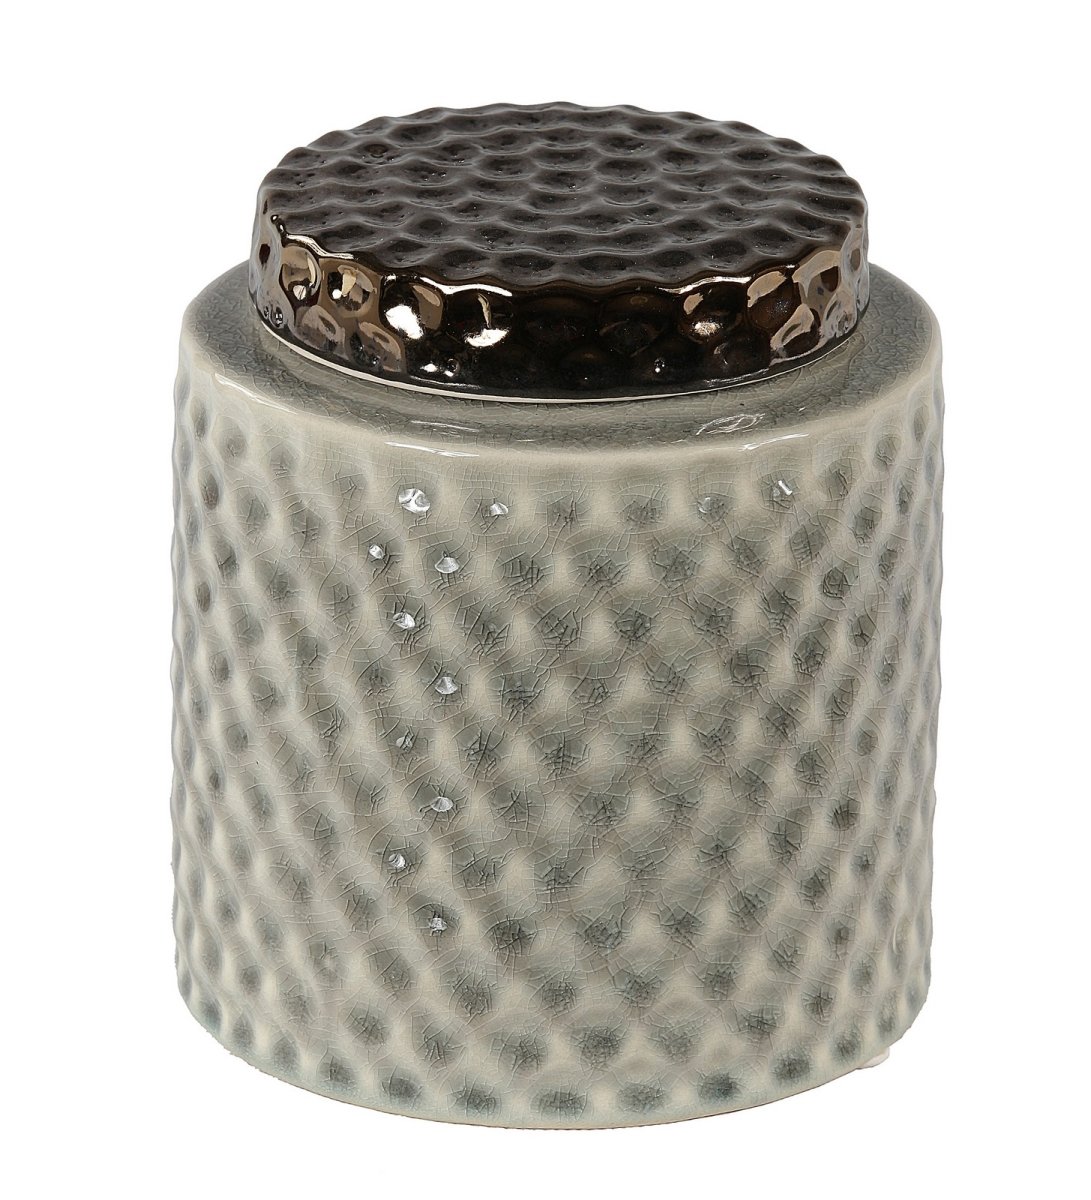 73011 6.5 X 6.5 X 7.5 In. Ceramic Lidded Vase, Small